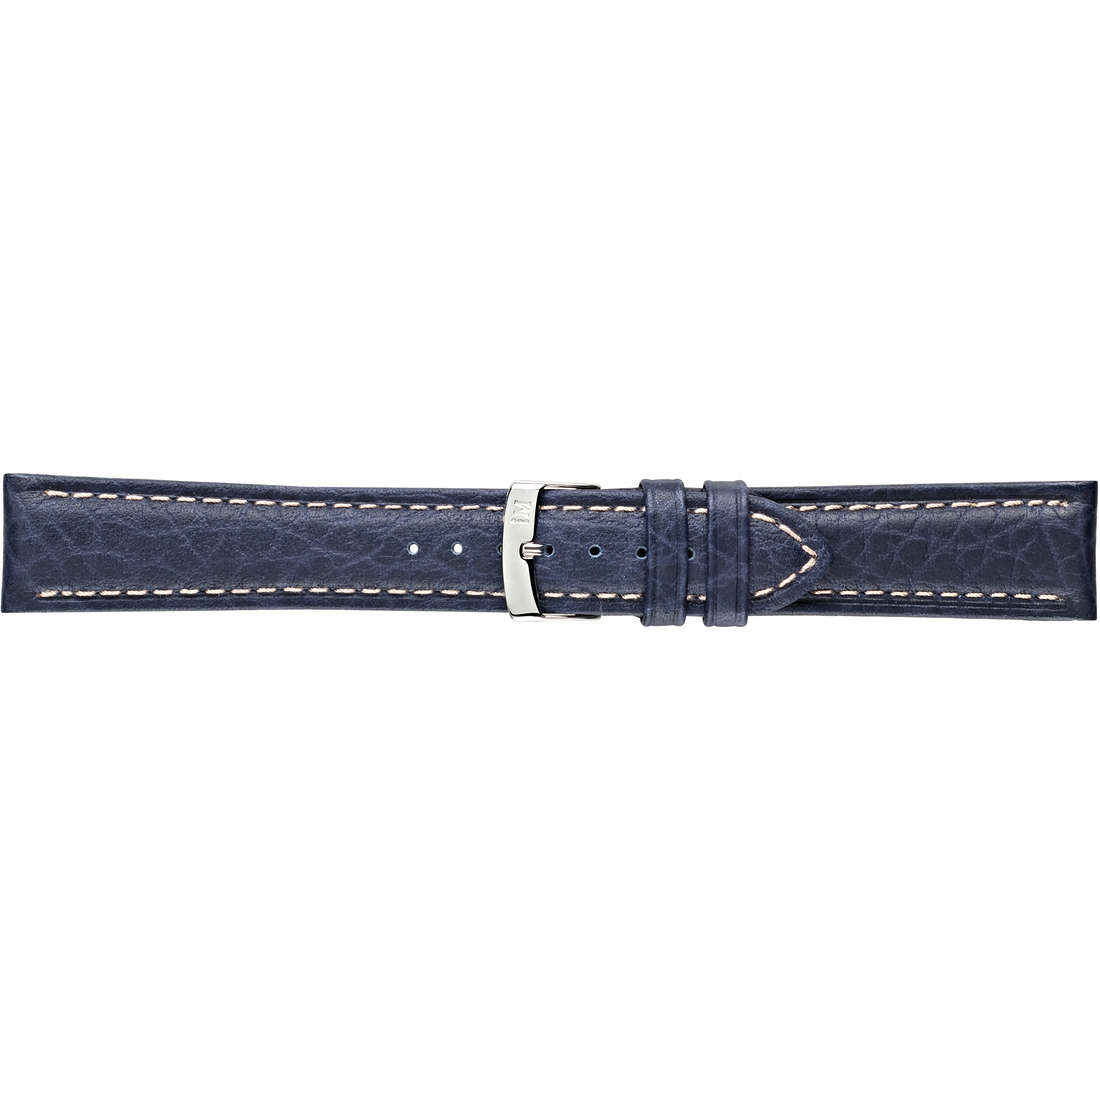 Cinturino orologio Morellato Blu Pelle A01U3689A38061CR22